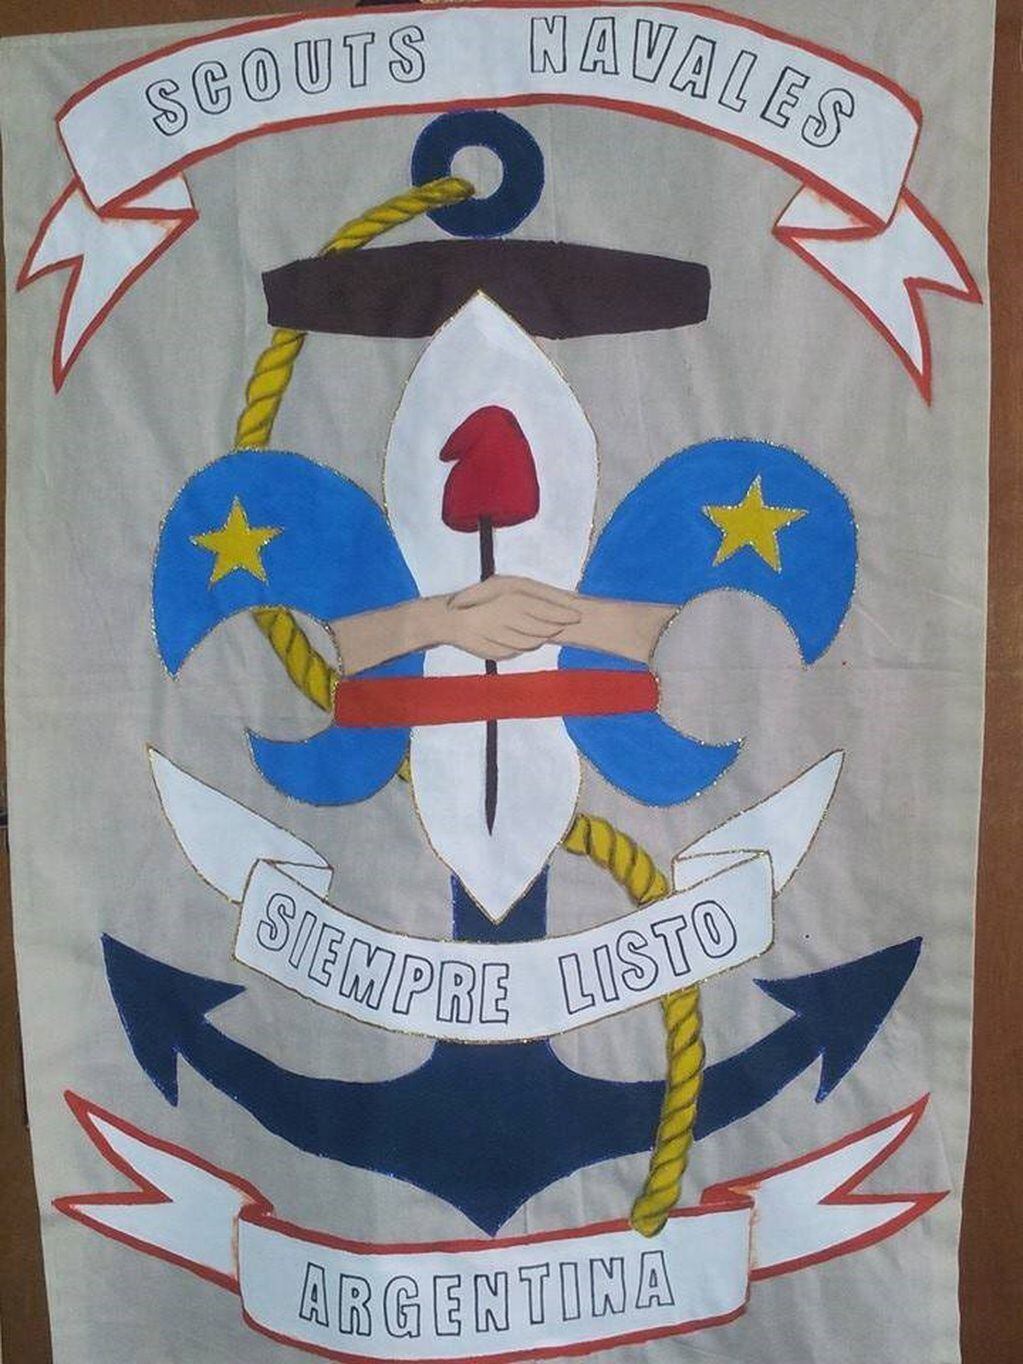 Estandarte del Grupo Scout Navales N°11 "Alférez Sobral" Ushuaia